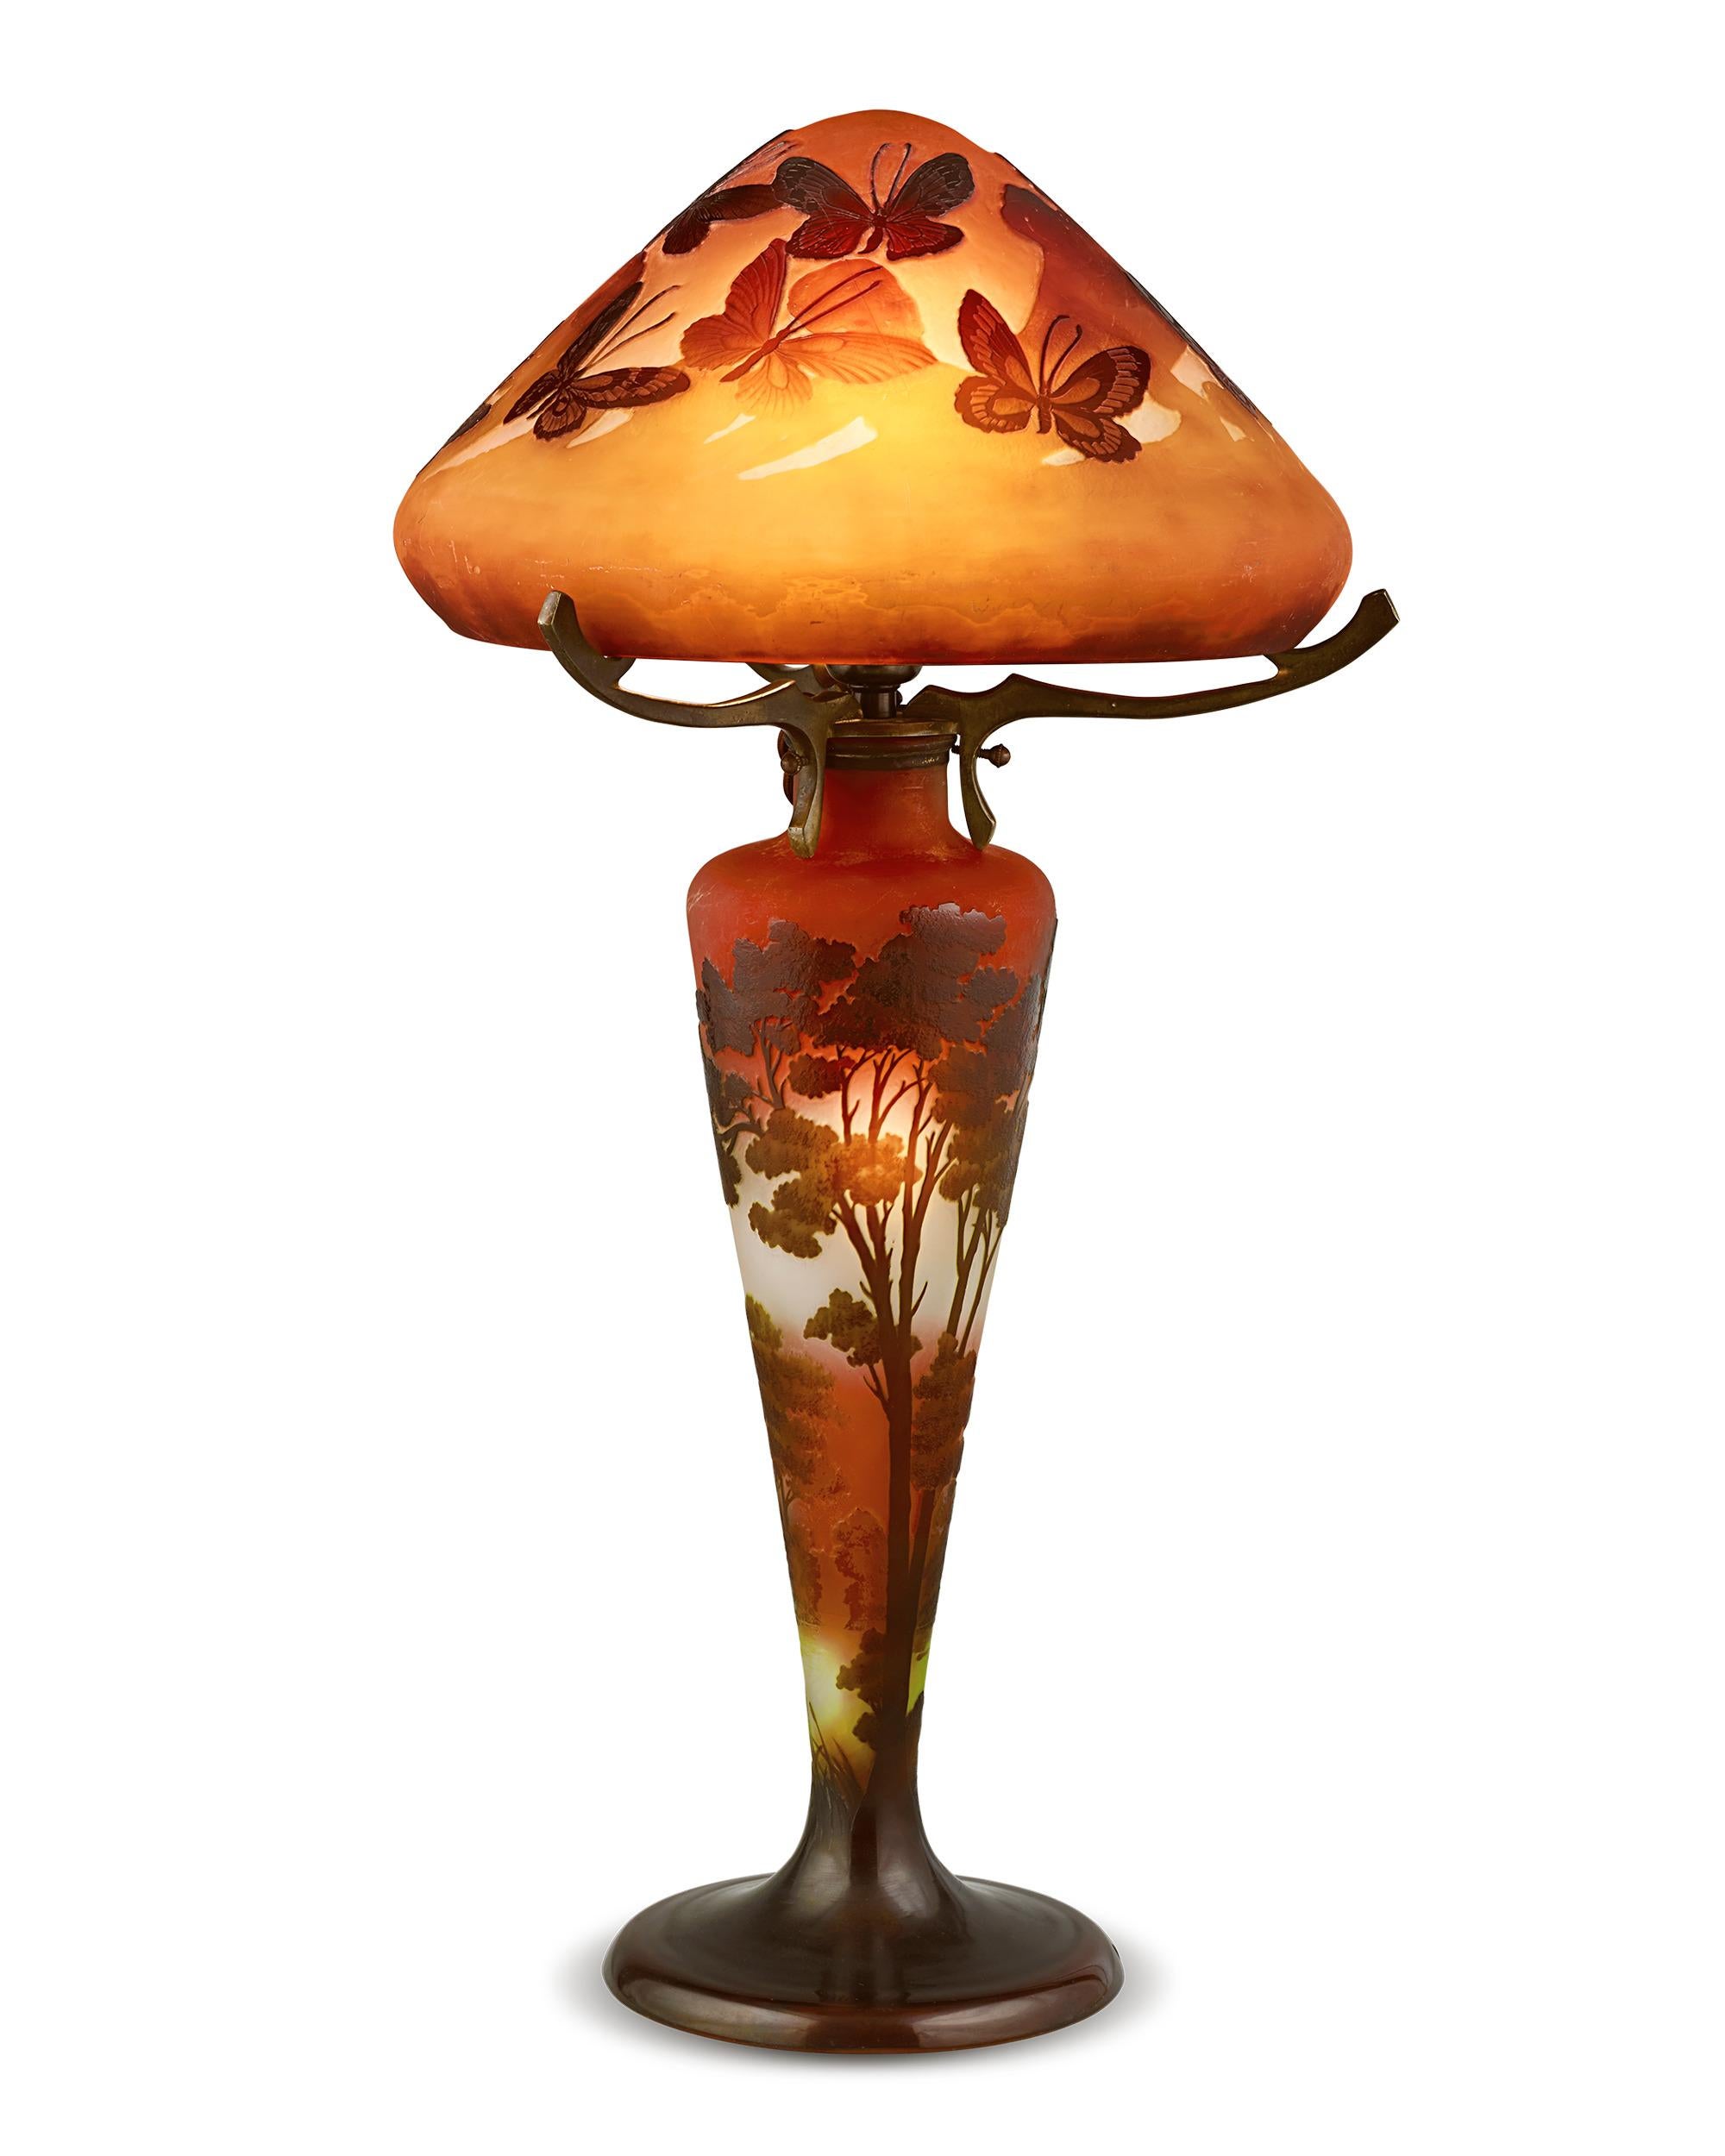 Impressionnante par sa taille et sa qualité artistique, cette magnifique lampe est l'œuvre du célèbre maître de l'Art nouveau Émile Gallé, l'un des noms les plus réputés de la verrerie française. L'appréciation de la nature par l'artiste est